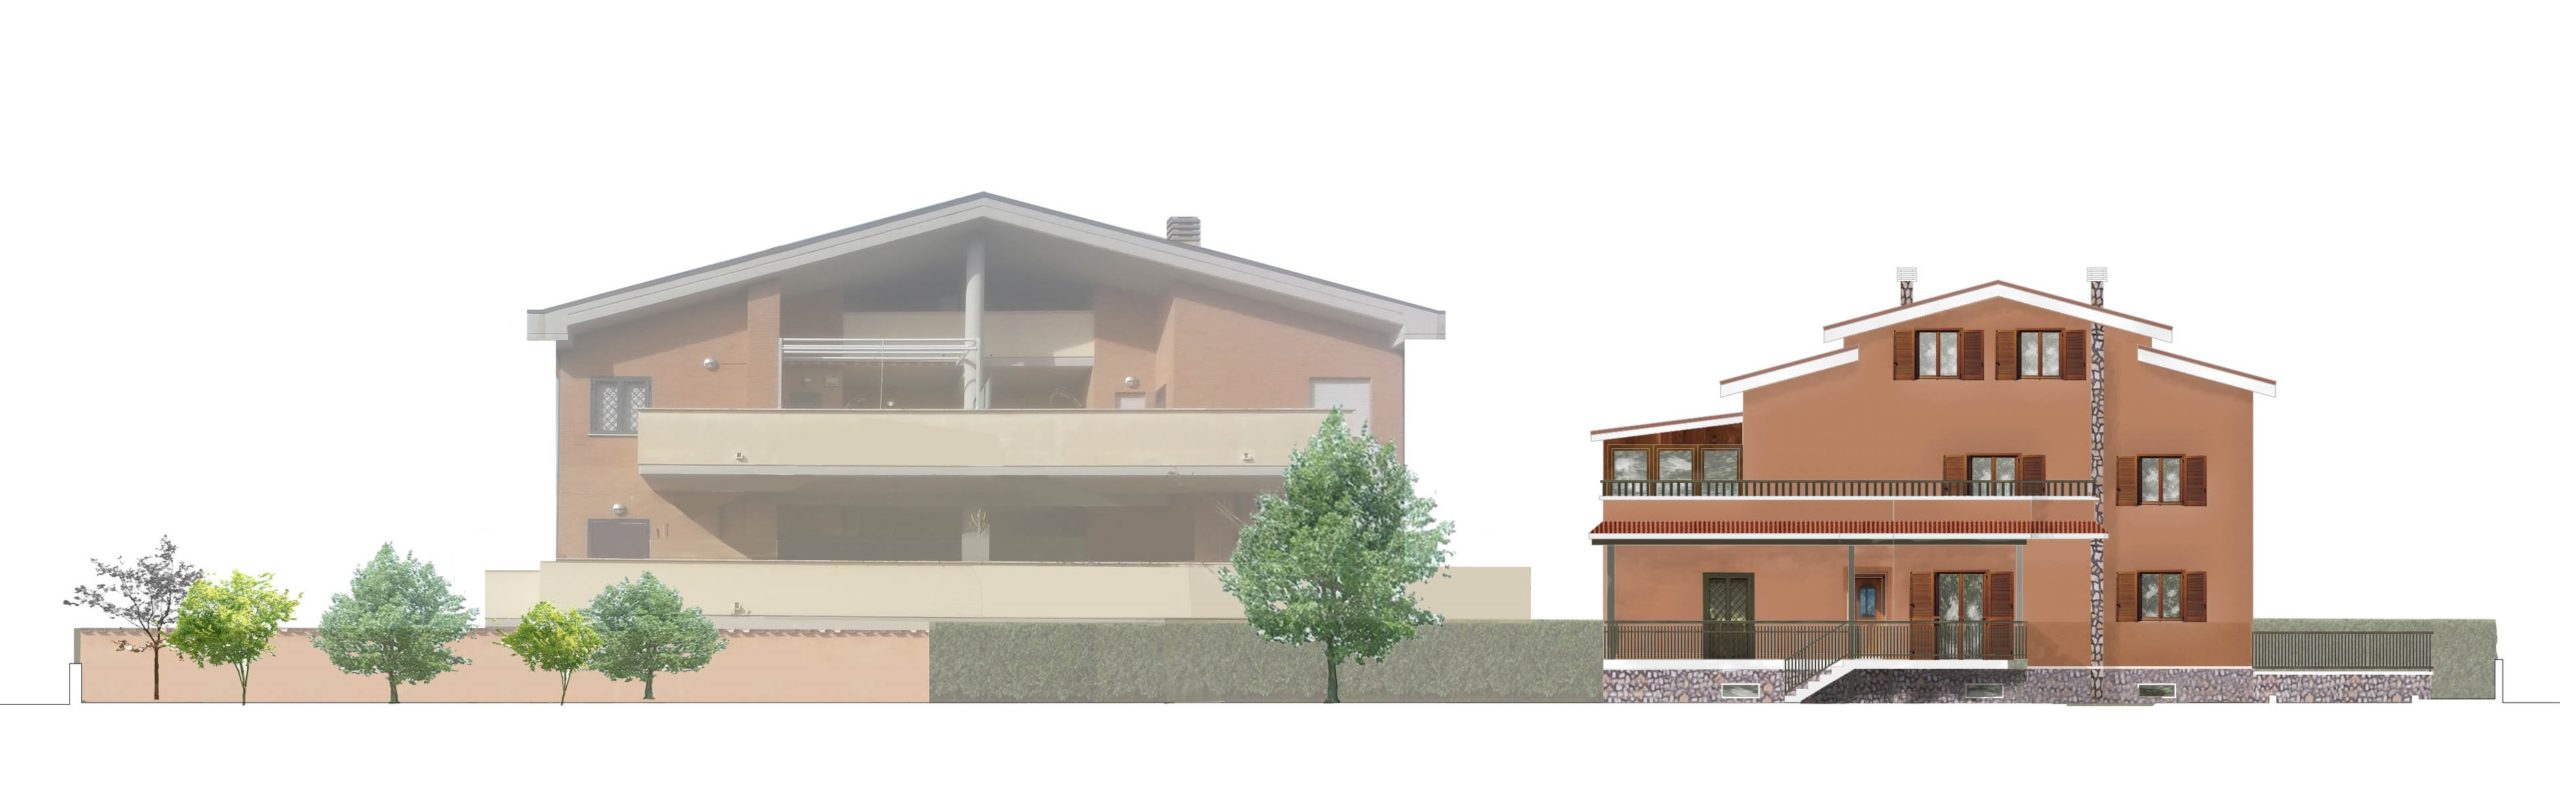 Piano Casa Villa Anagnina - Prospetto prima dell'intervento